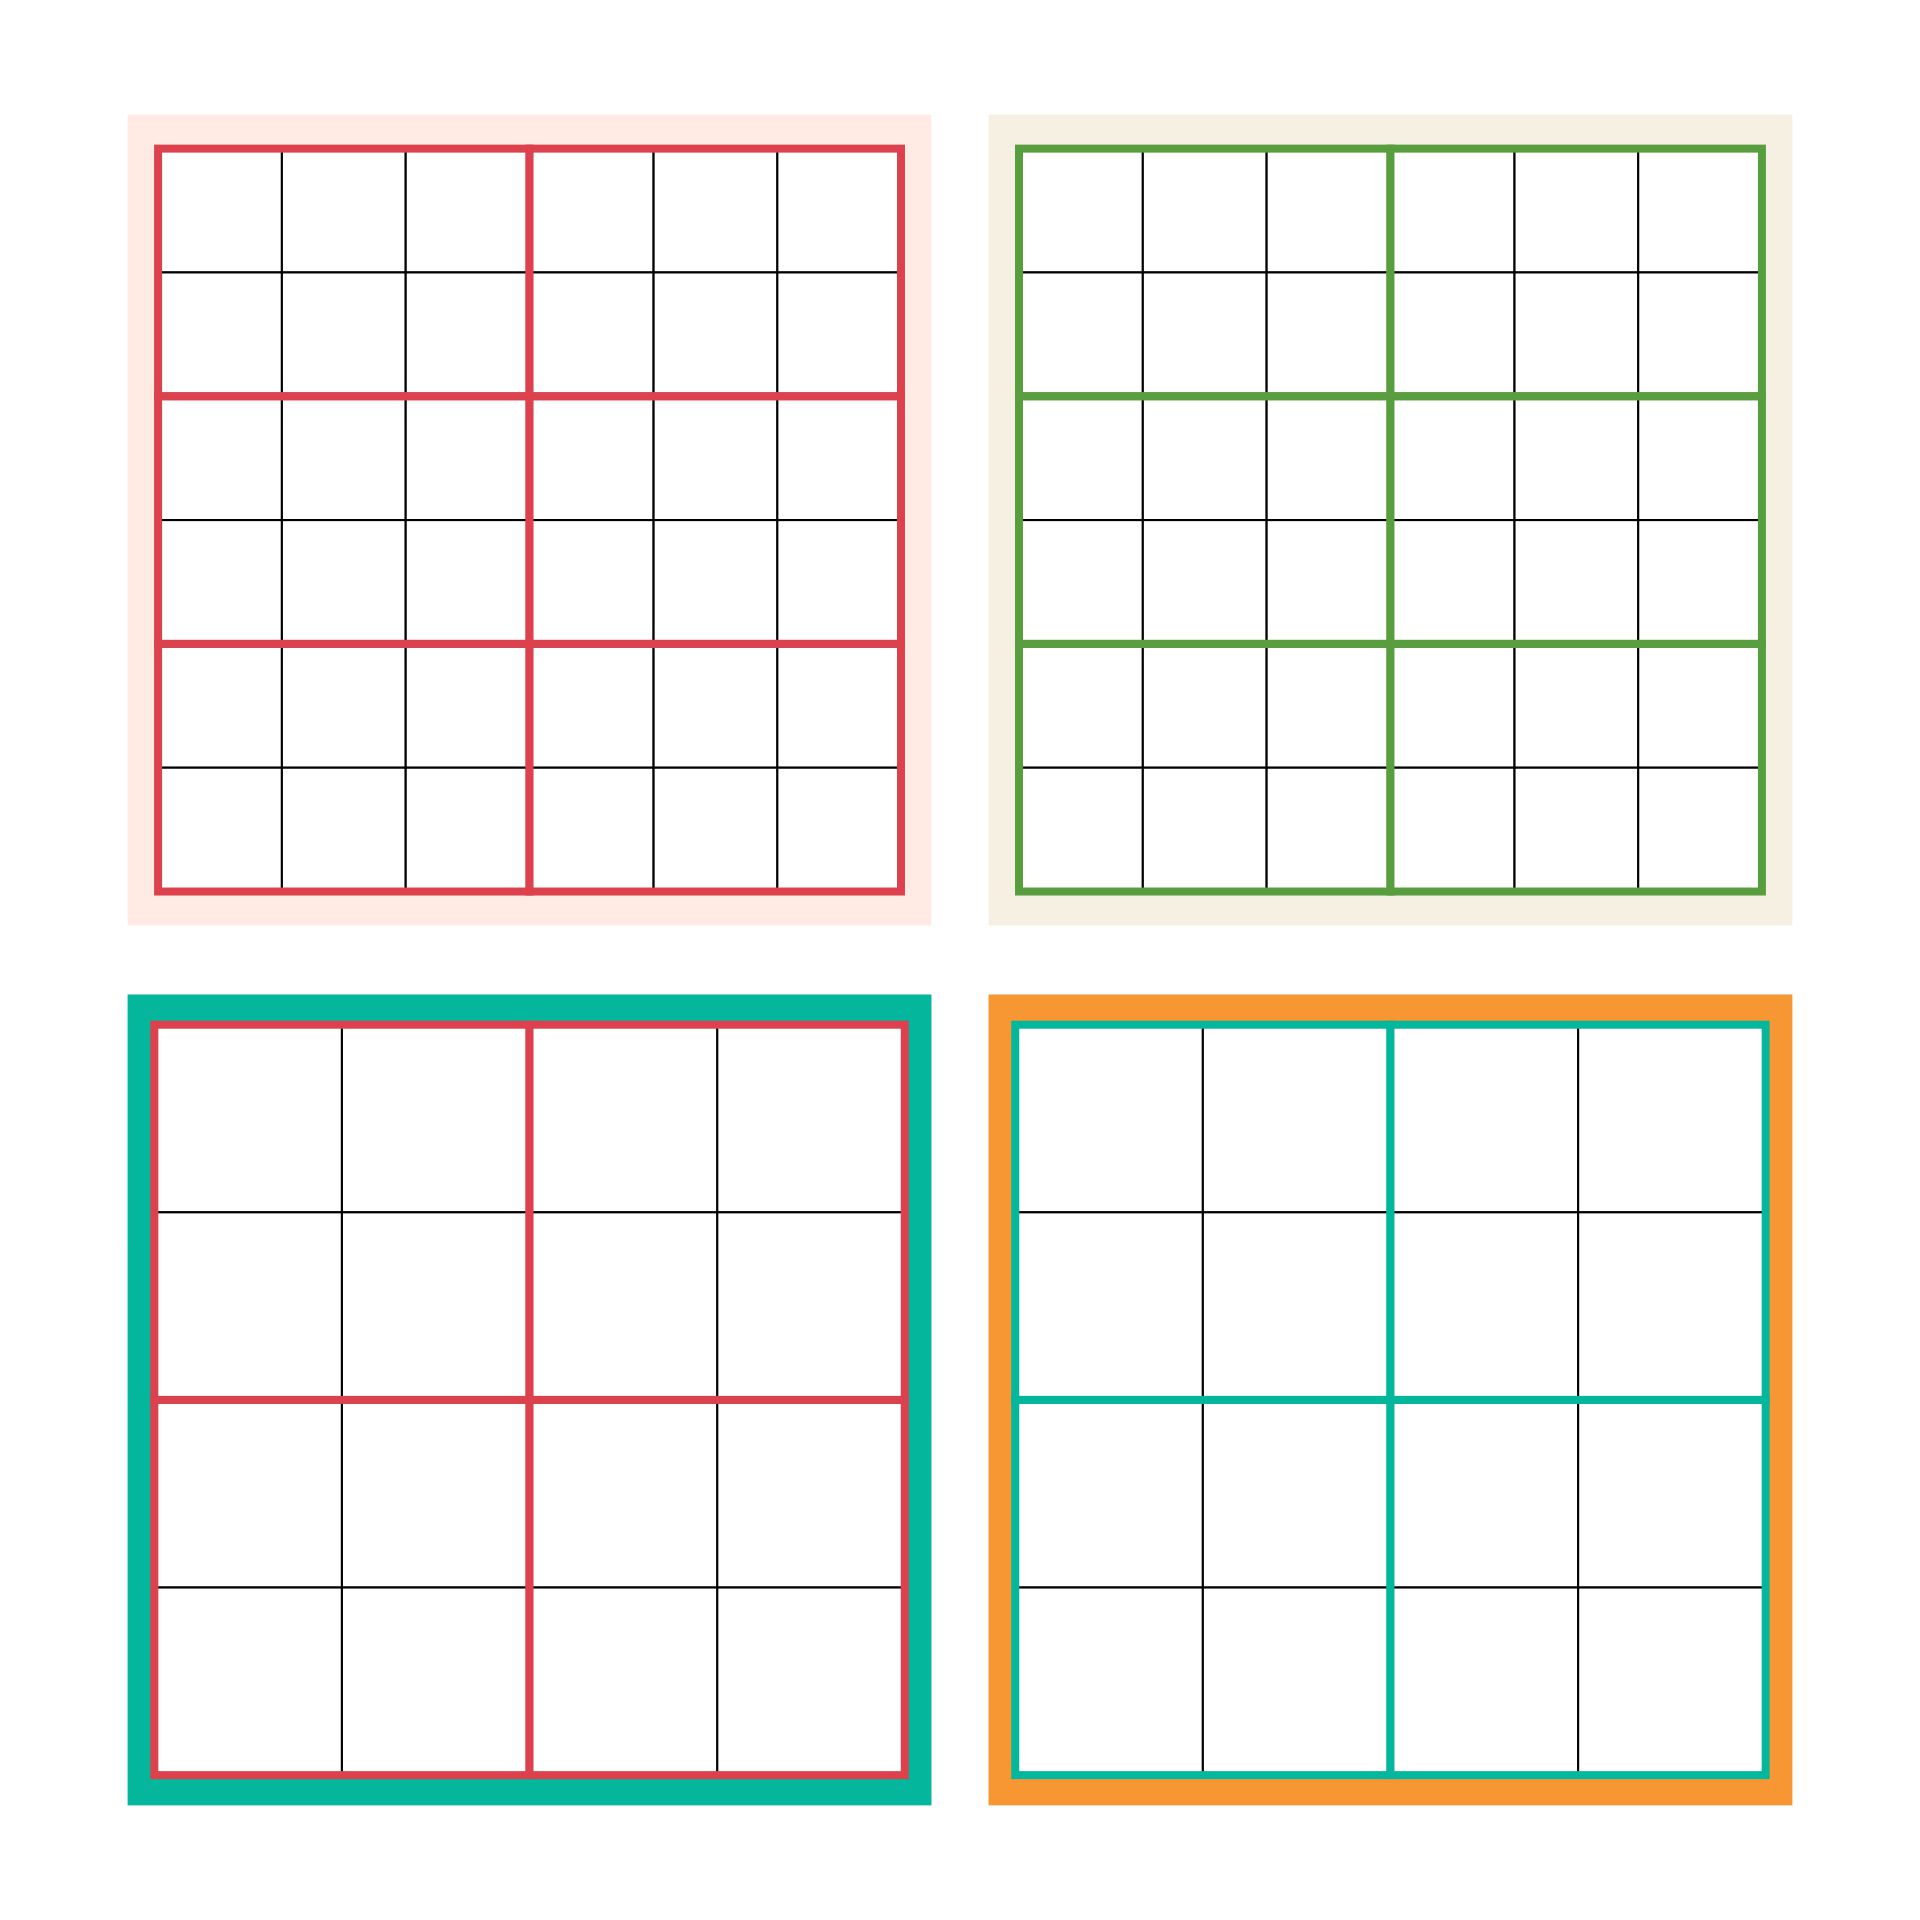 5 Best Images of Printable Blank Grid 3X3 Blank Sudoku Grid, Free